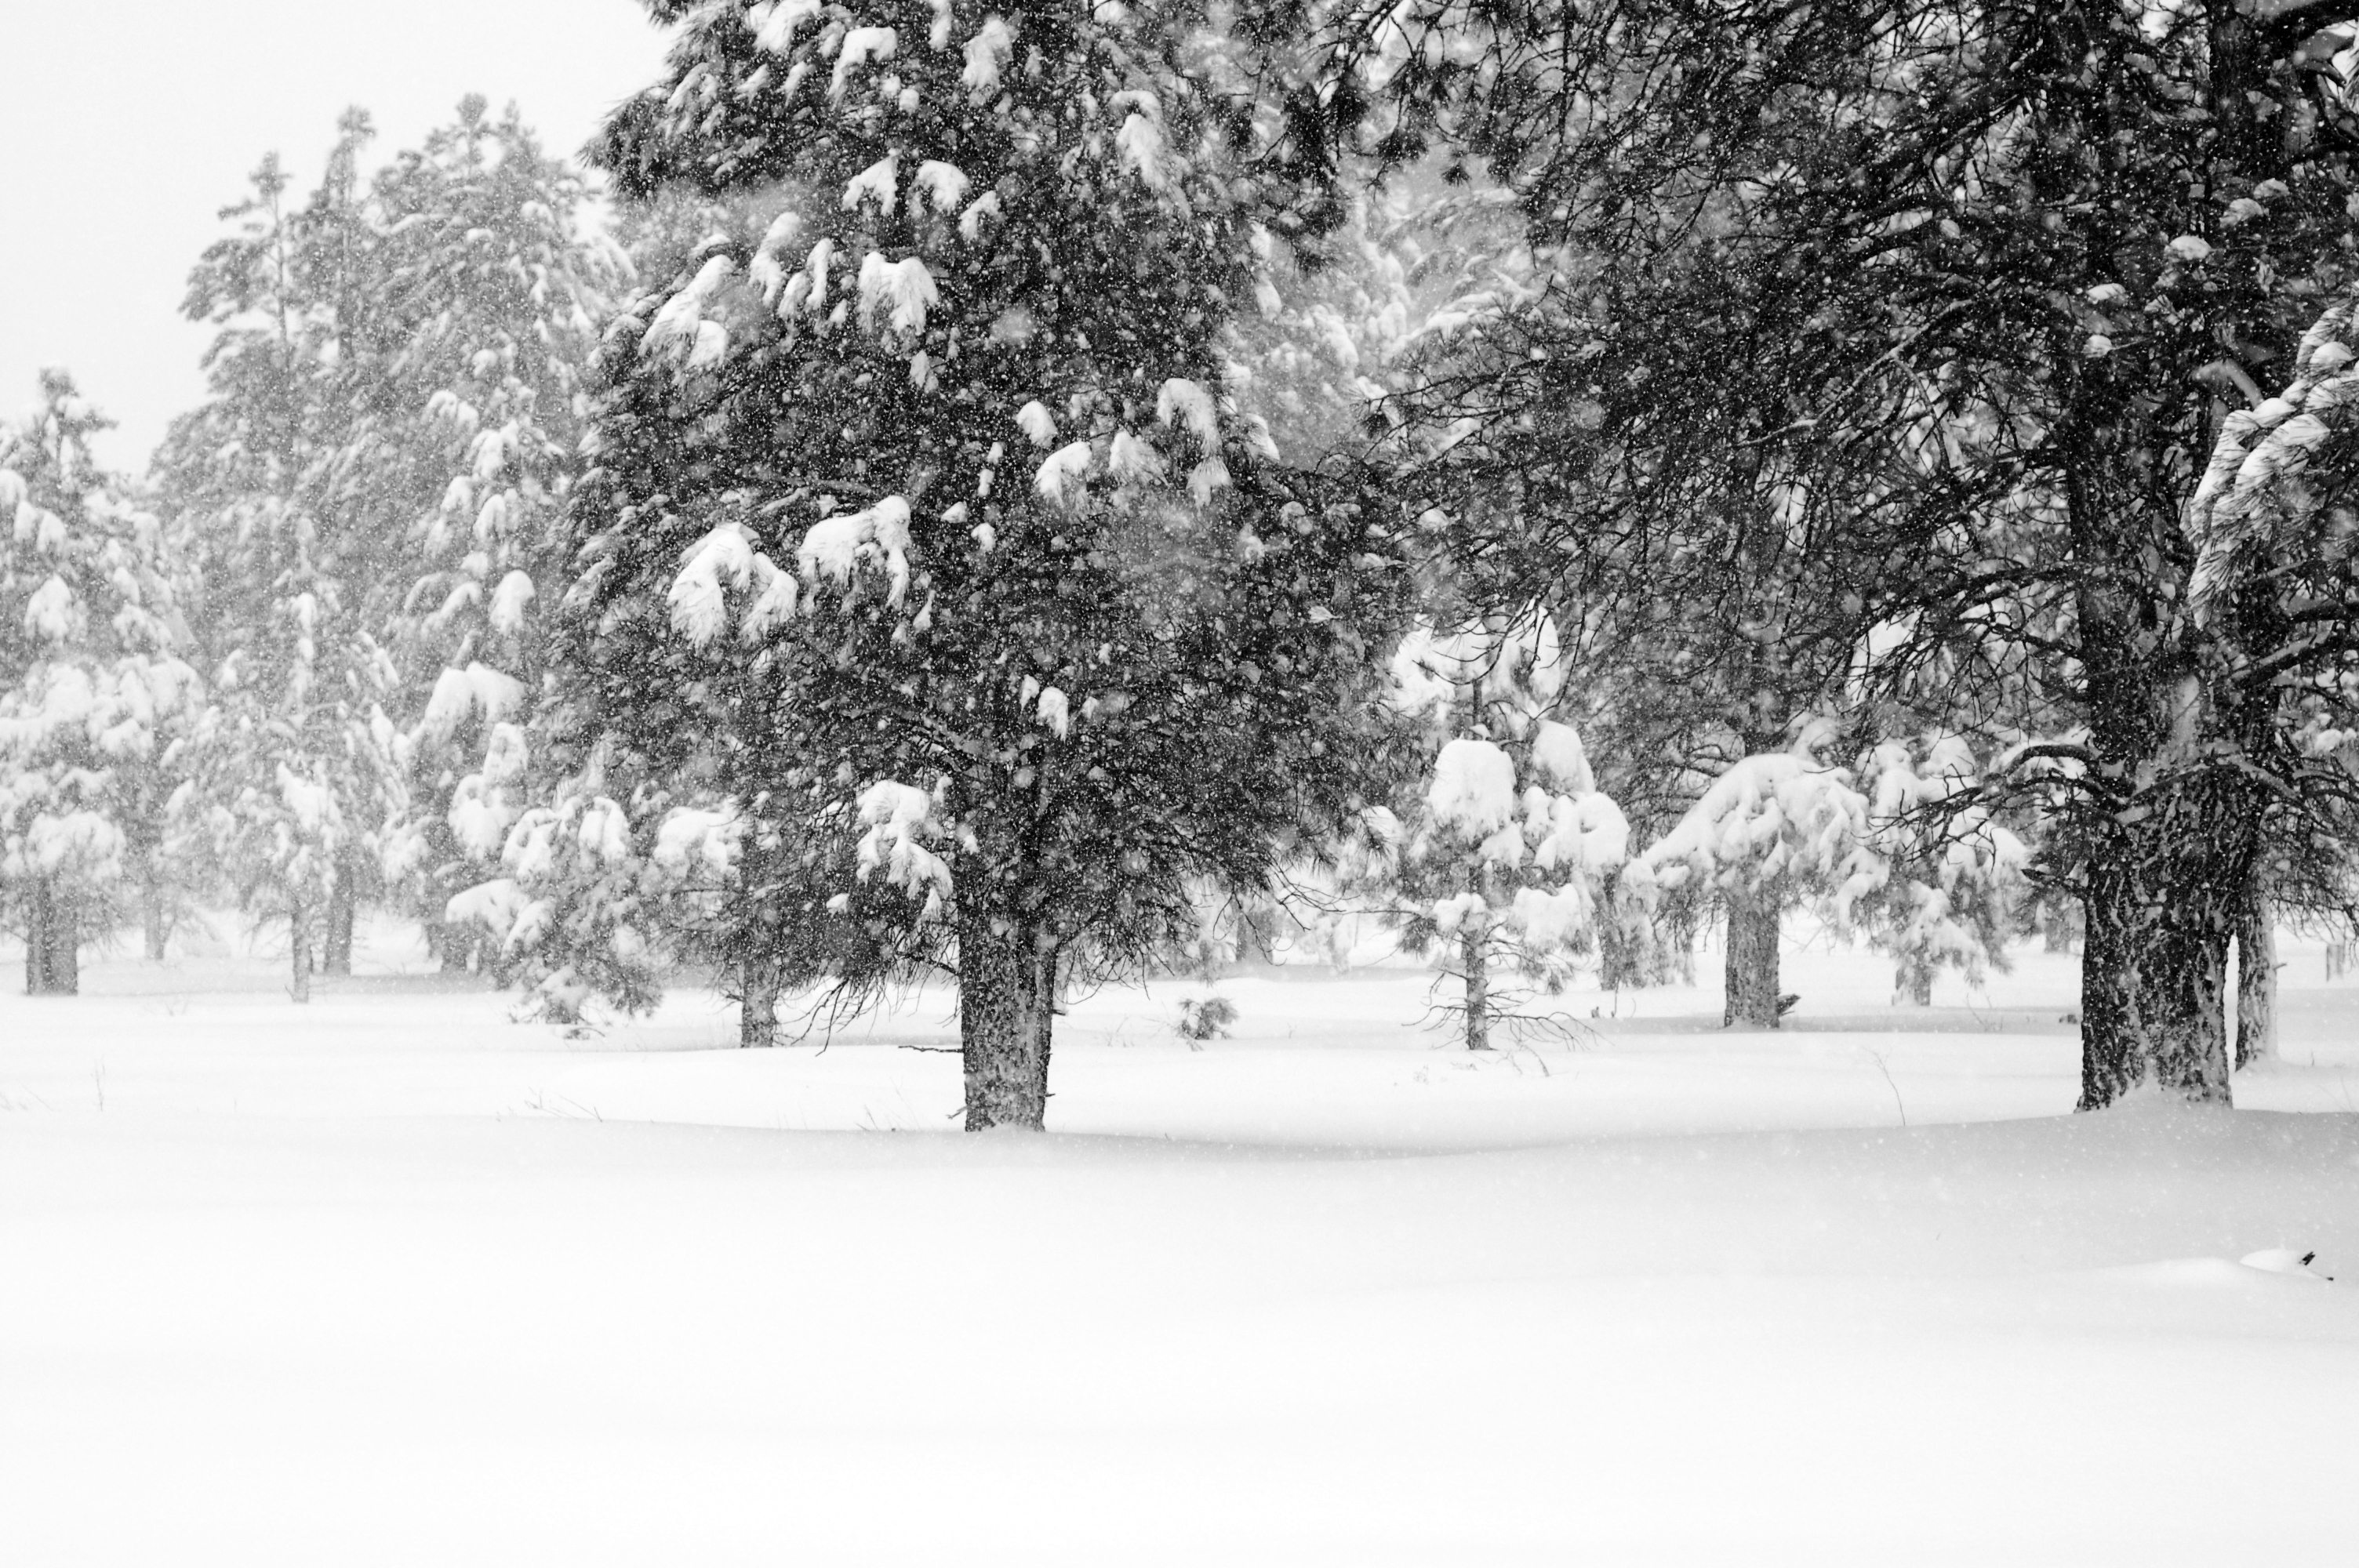 Snowy Day in Flagstaff